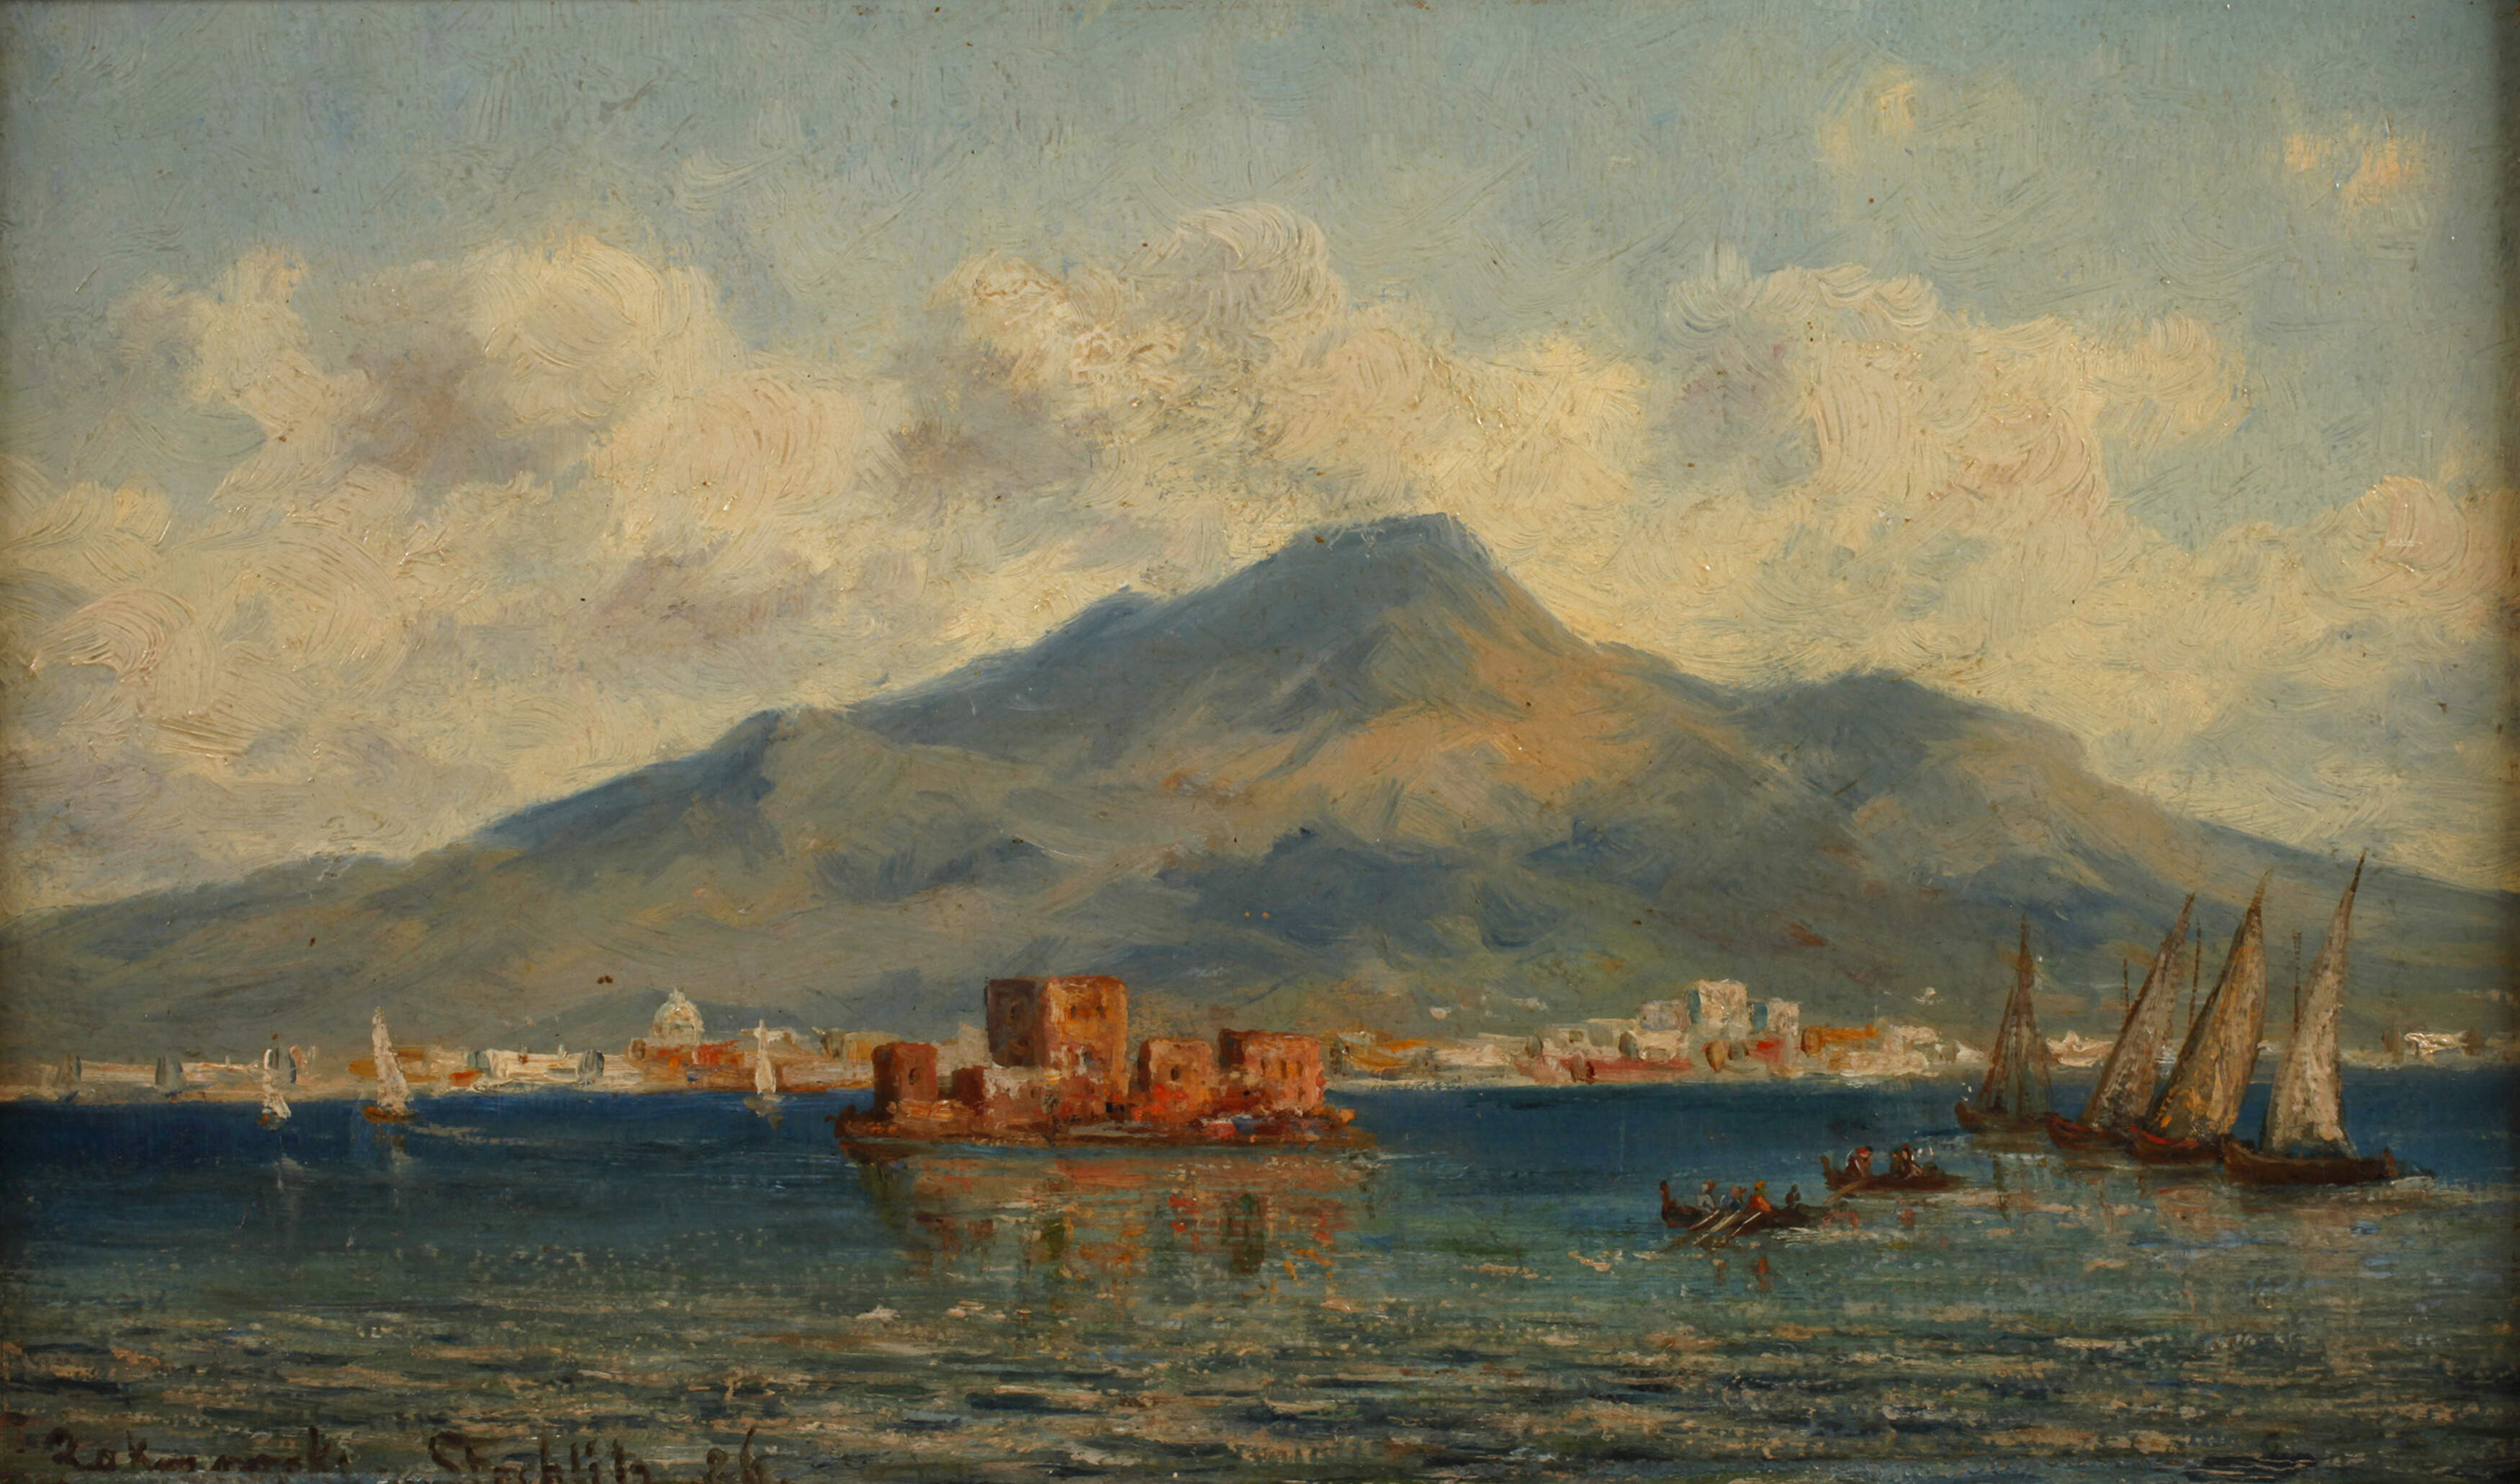 Zakrzowski von Stehlitz, "Blick auf den Vesuv"